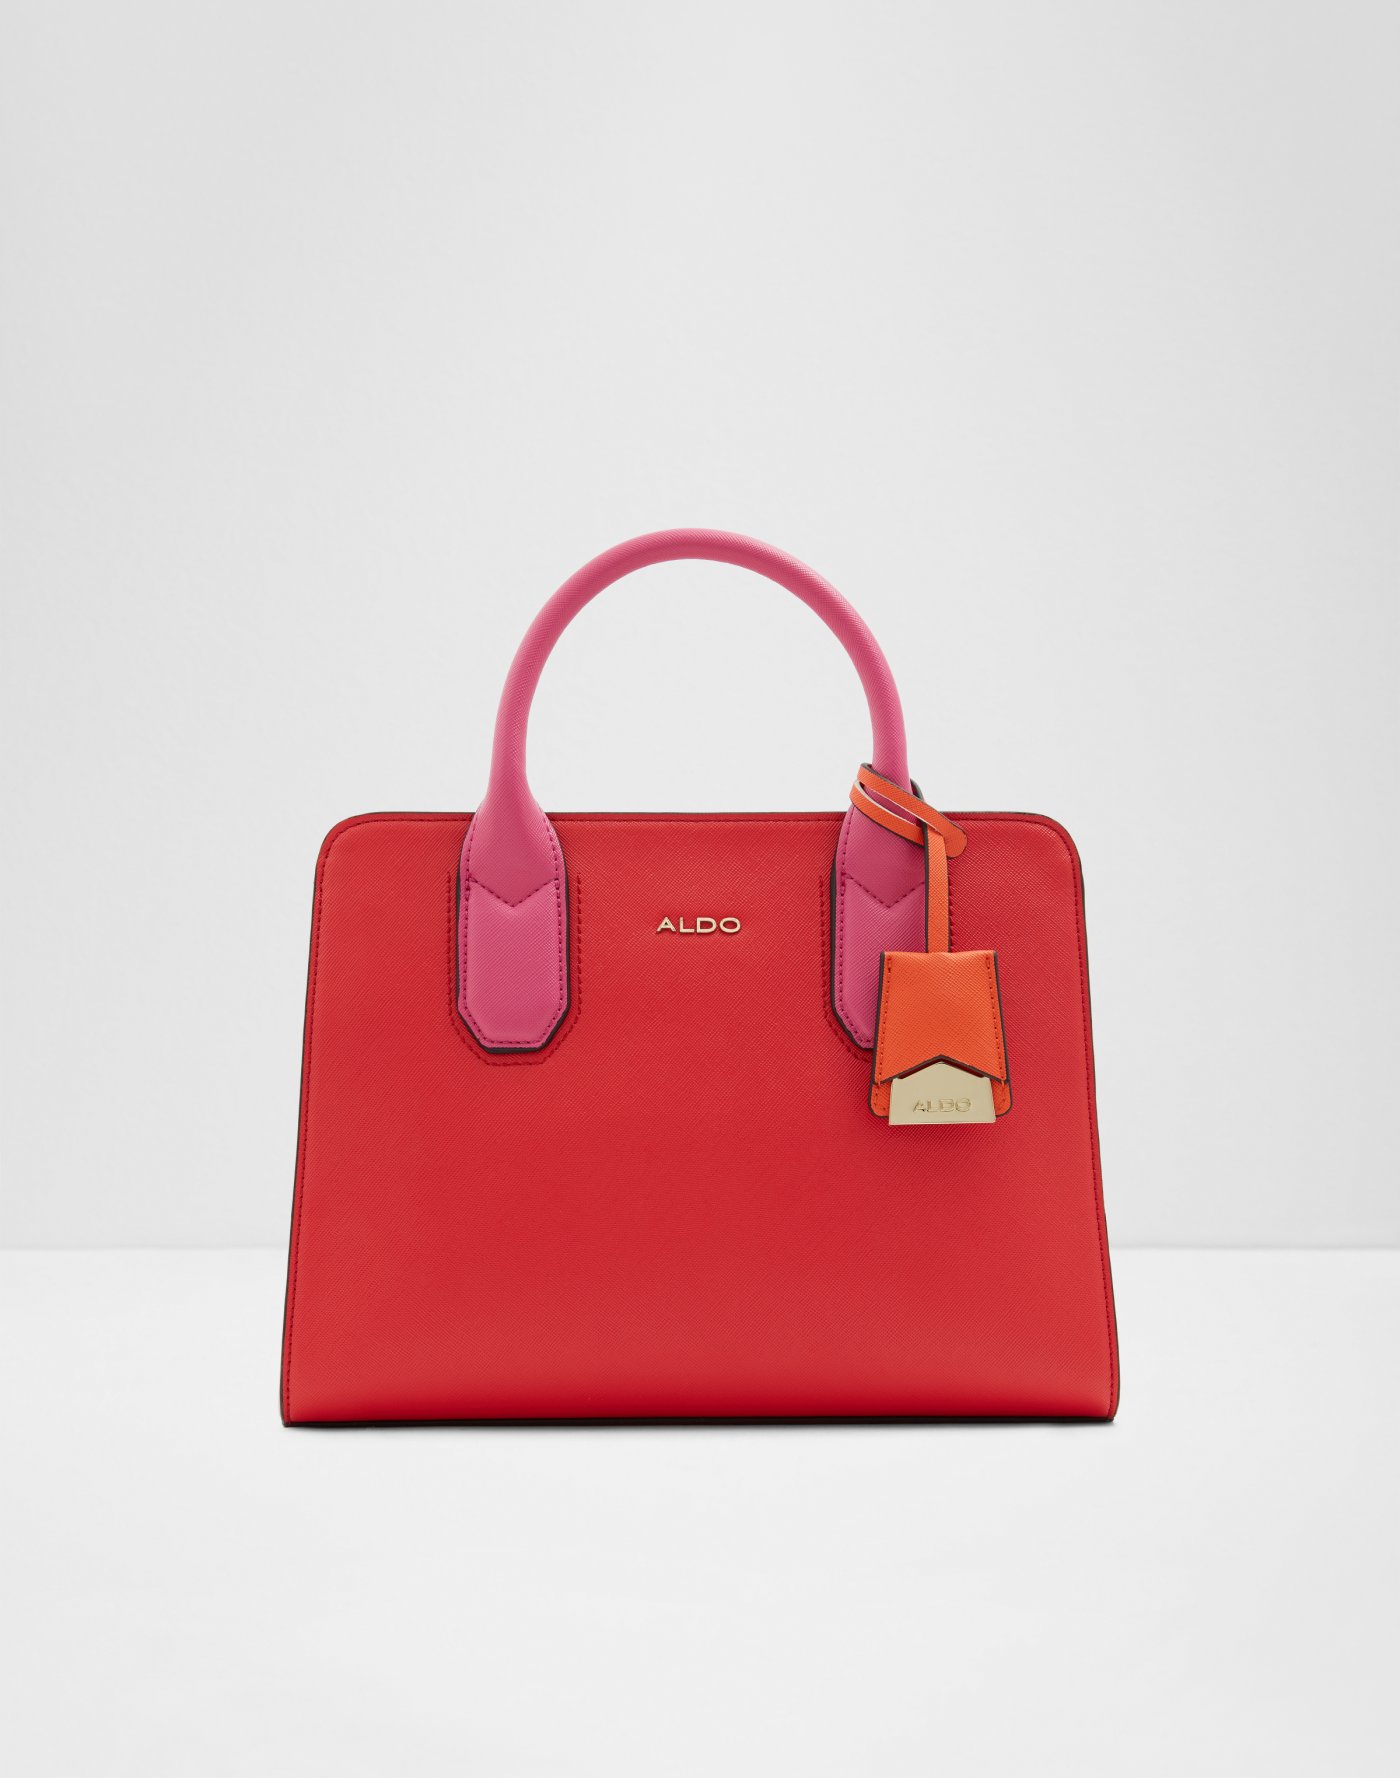 Handbags for Women | ALDO Canada